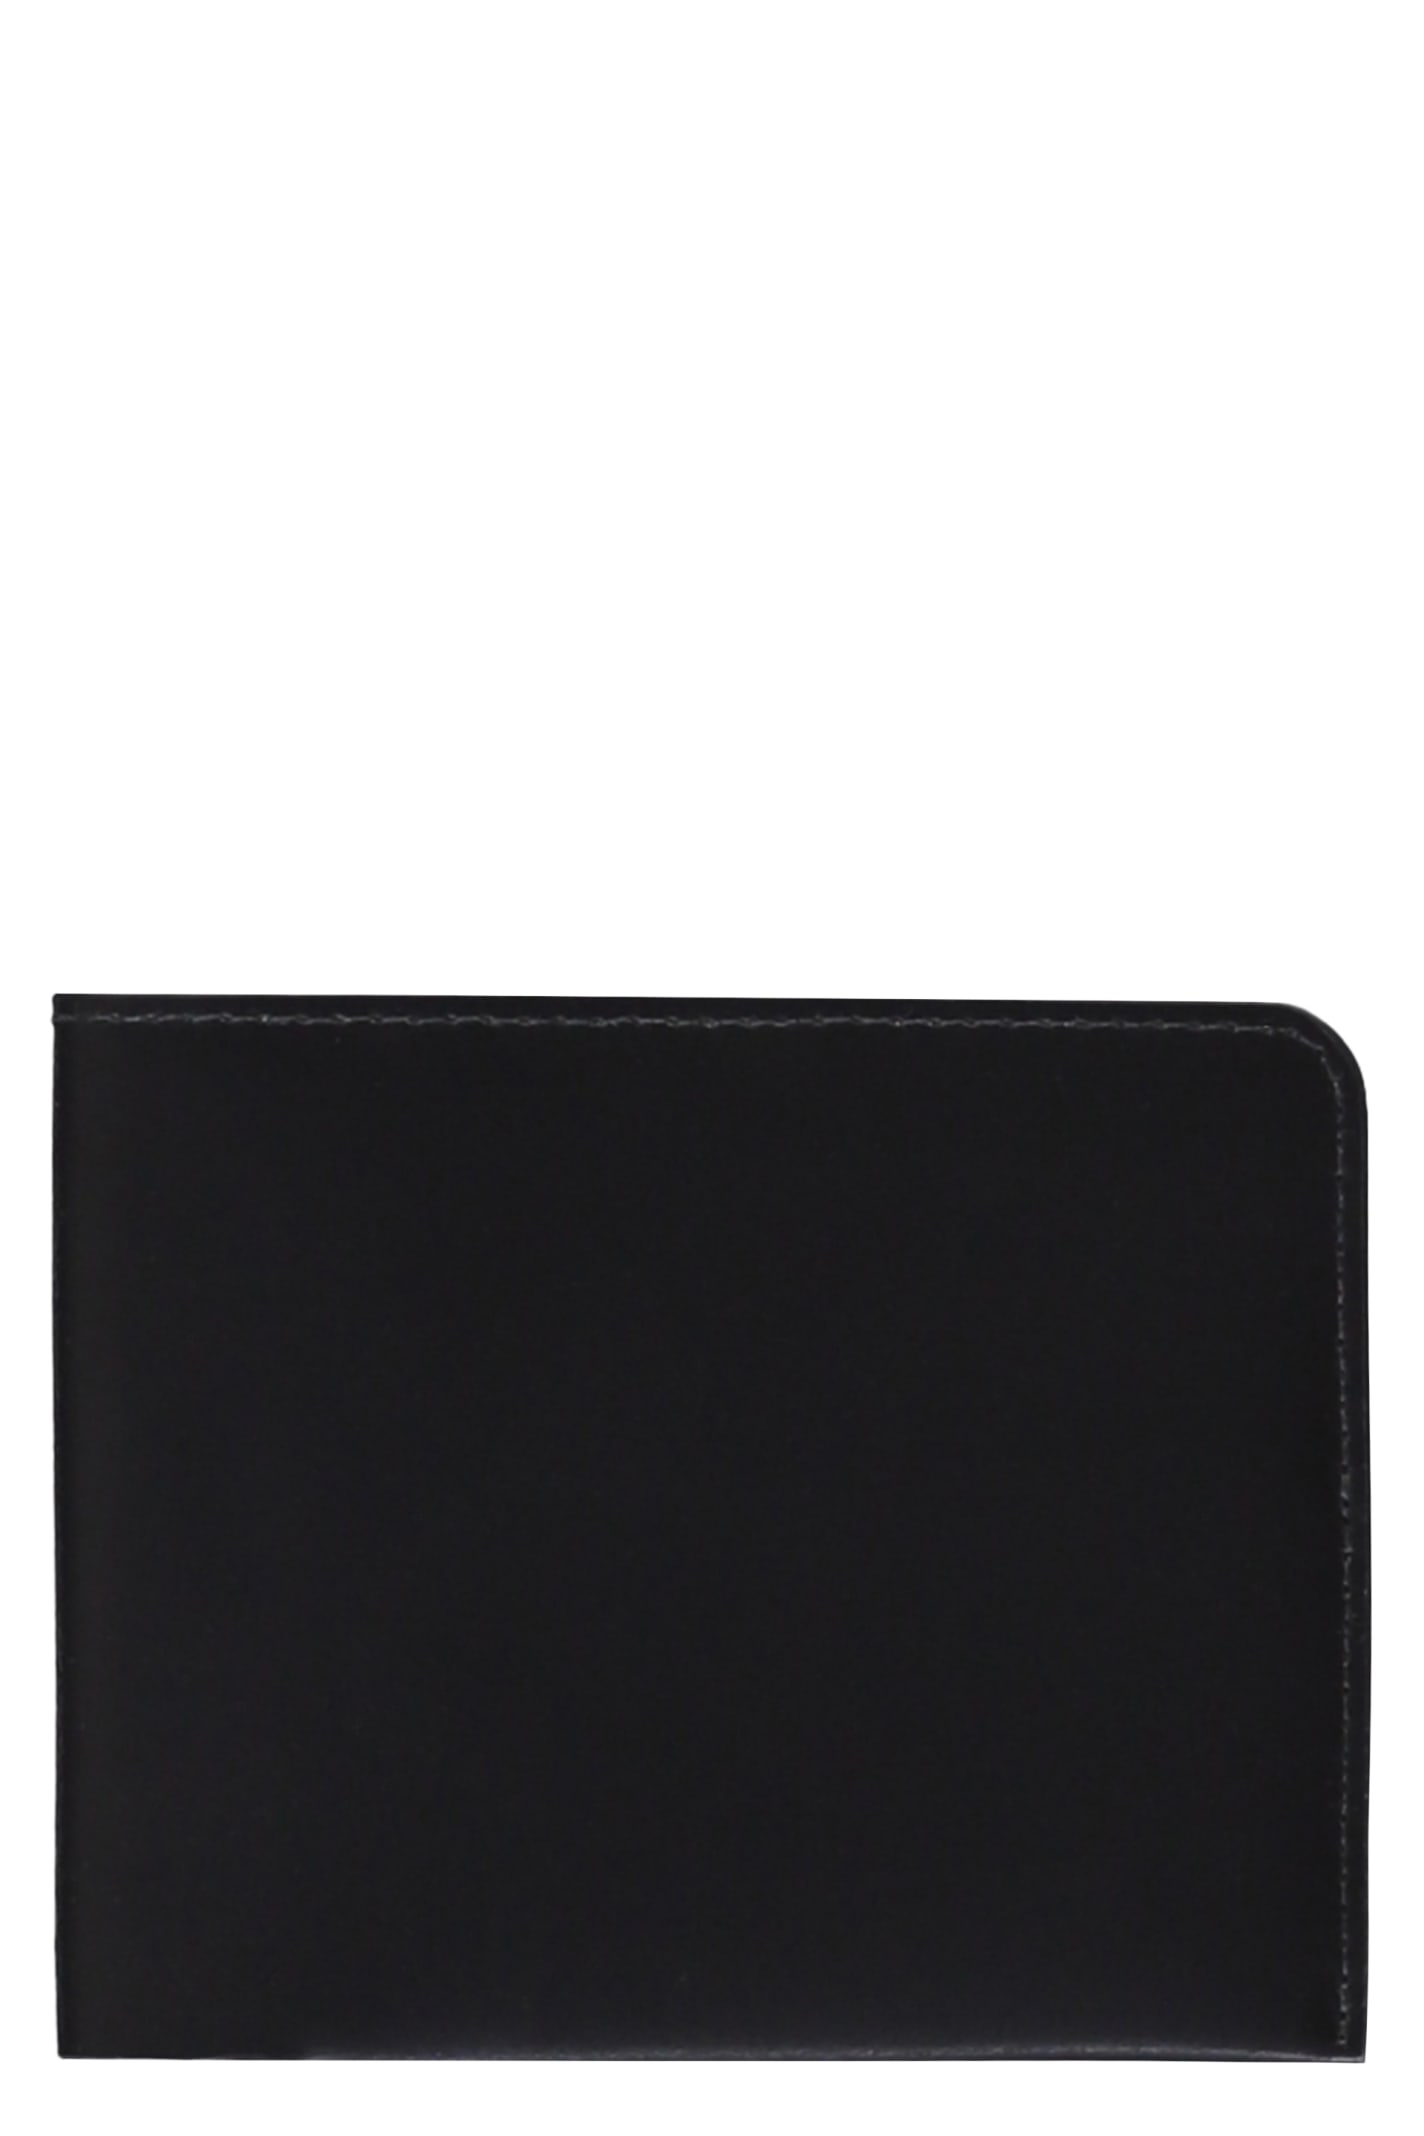 Dries Van Noten Leather Wallet In Black